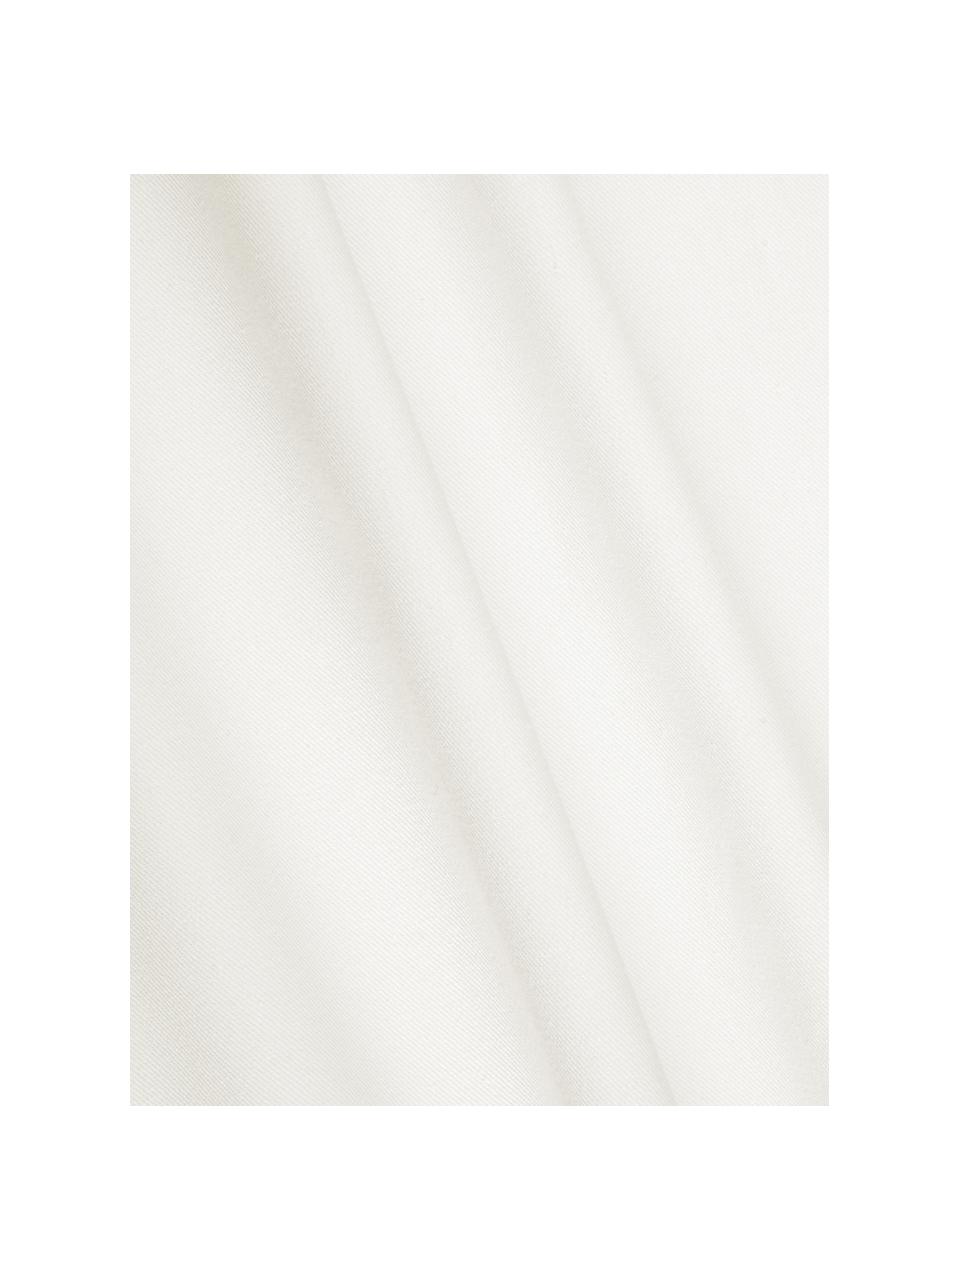 Baumwoll-Kissenhülle Mads in Weiß, 100% Baumwolle, Weiß, 40 x 40 cm